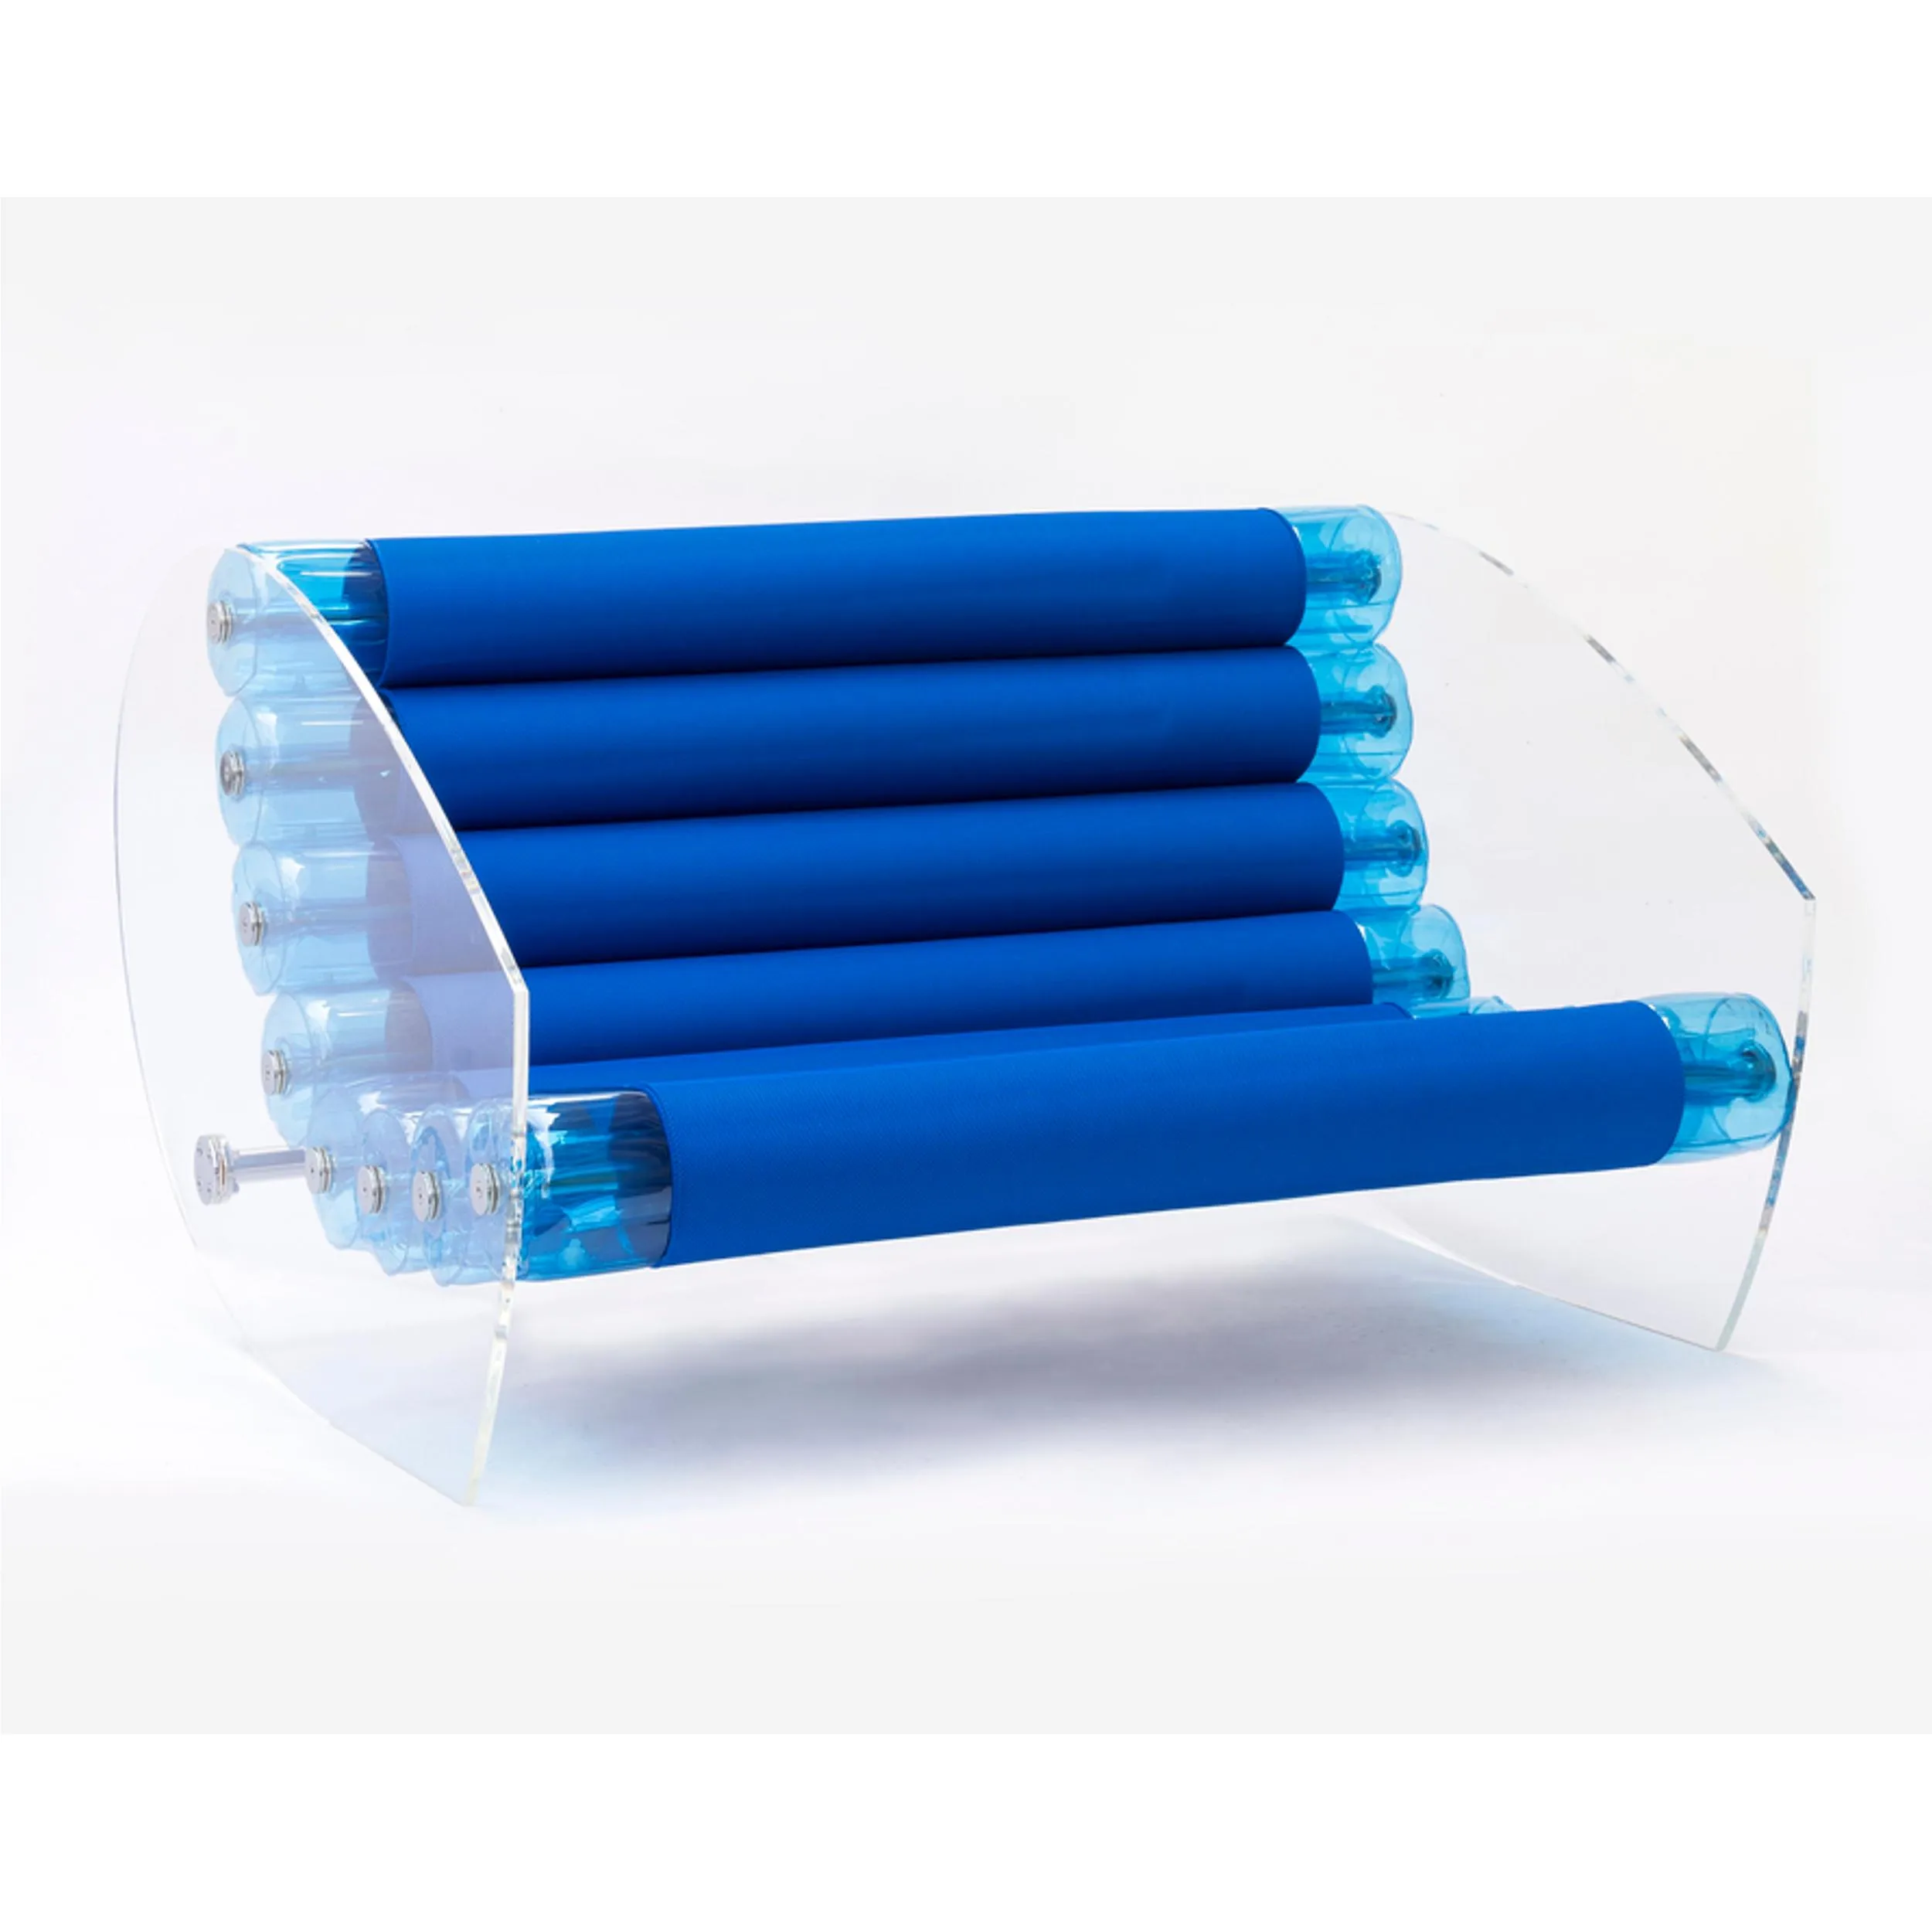 Divano modello MW05 design in vetro temperato, con tessuto ignifugo dimensioni 1,498x66,5xH72 cm peso 40 kg, seduta gonfiabile in TPU colore Blu Trasparente